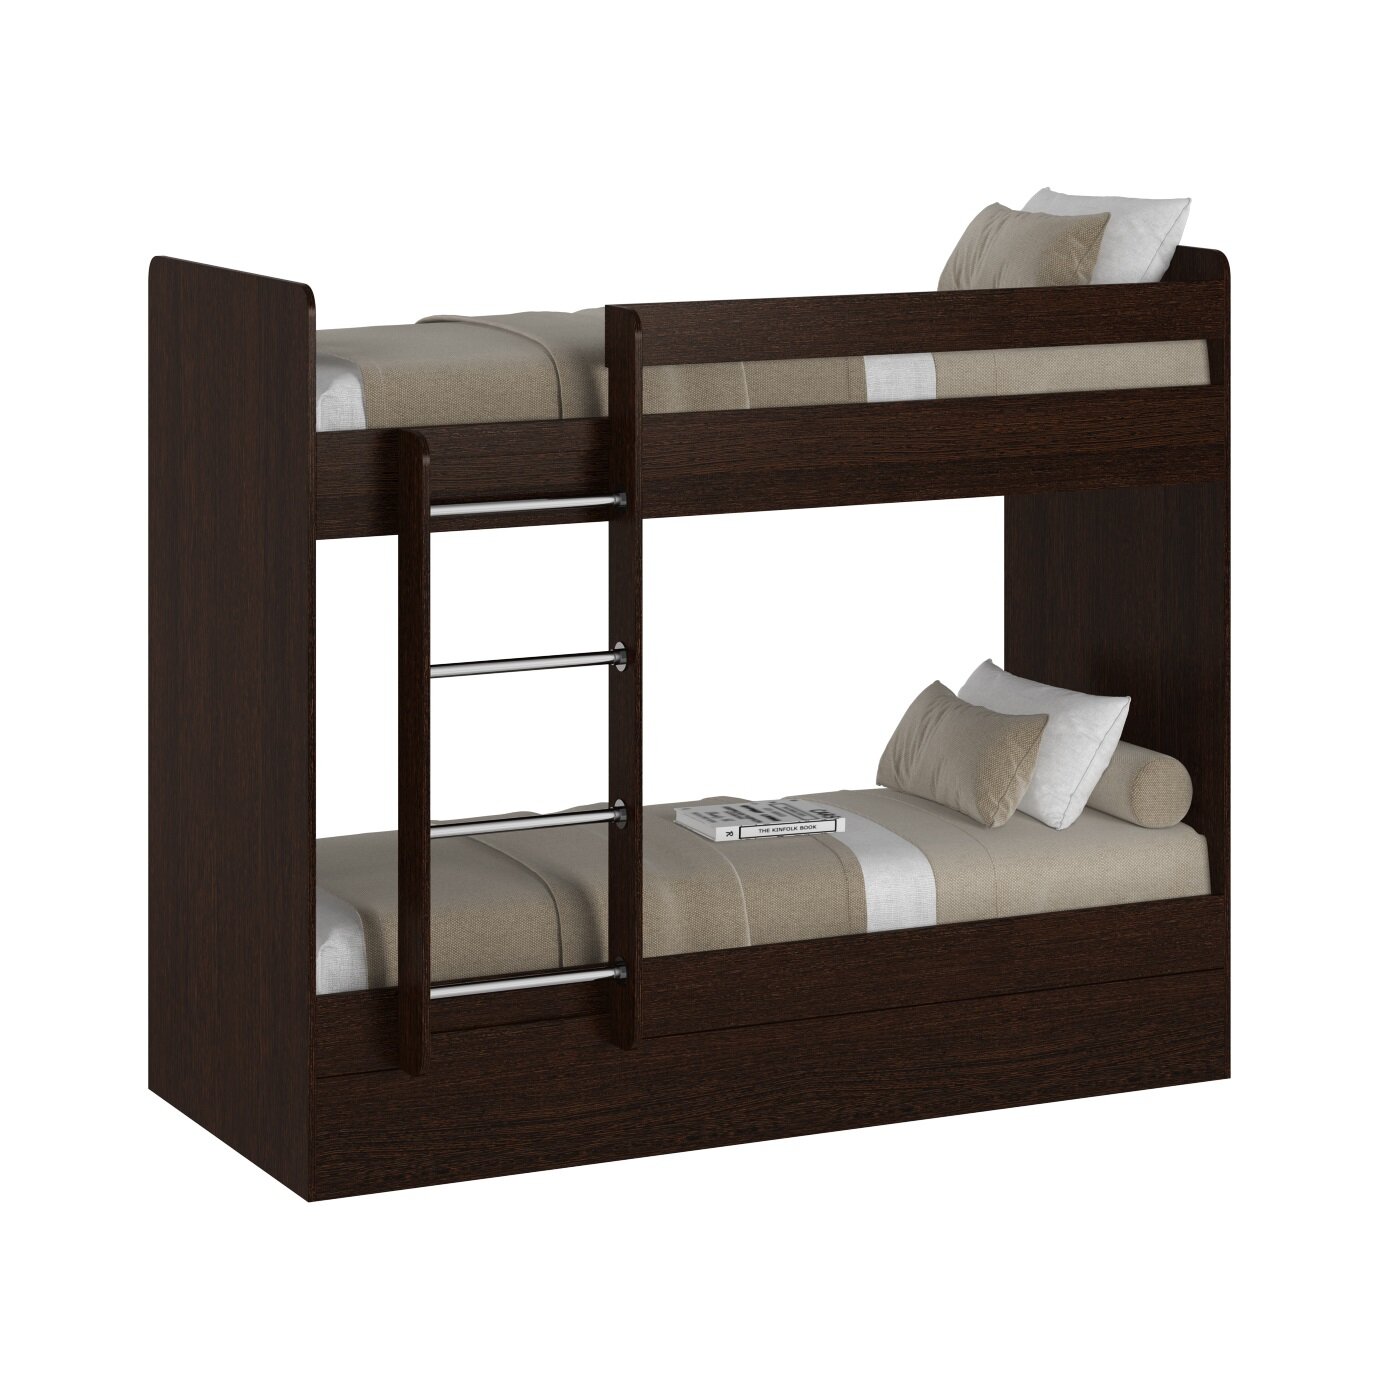 Кровать двухъярусная Есэндвич plus Лаворо, для детей, для взрослых, 200х80 см (Венге)